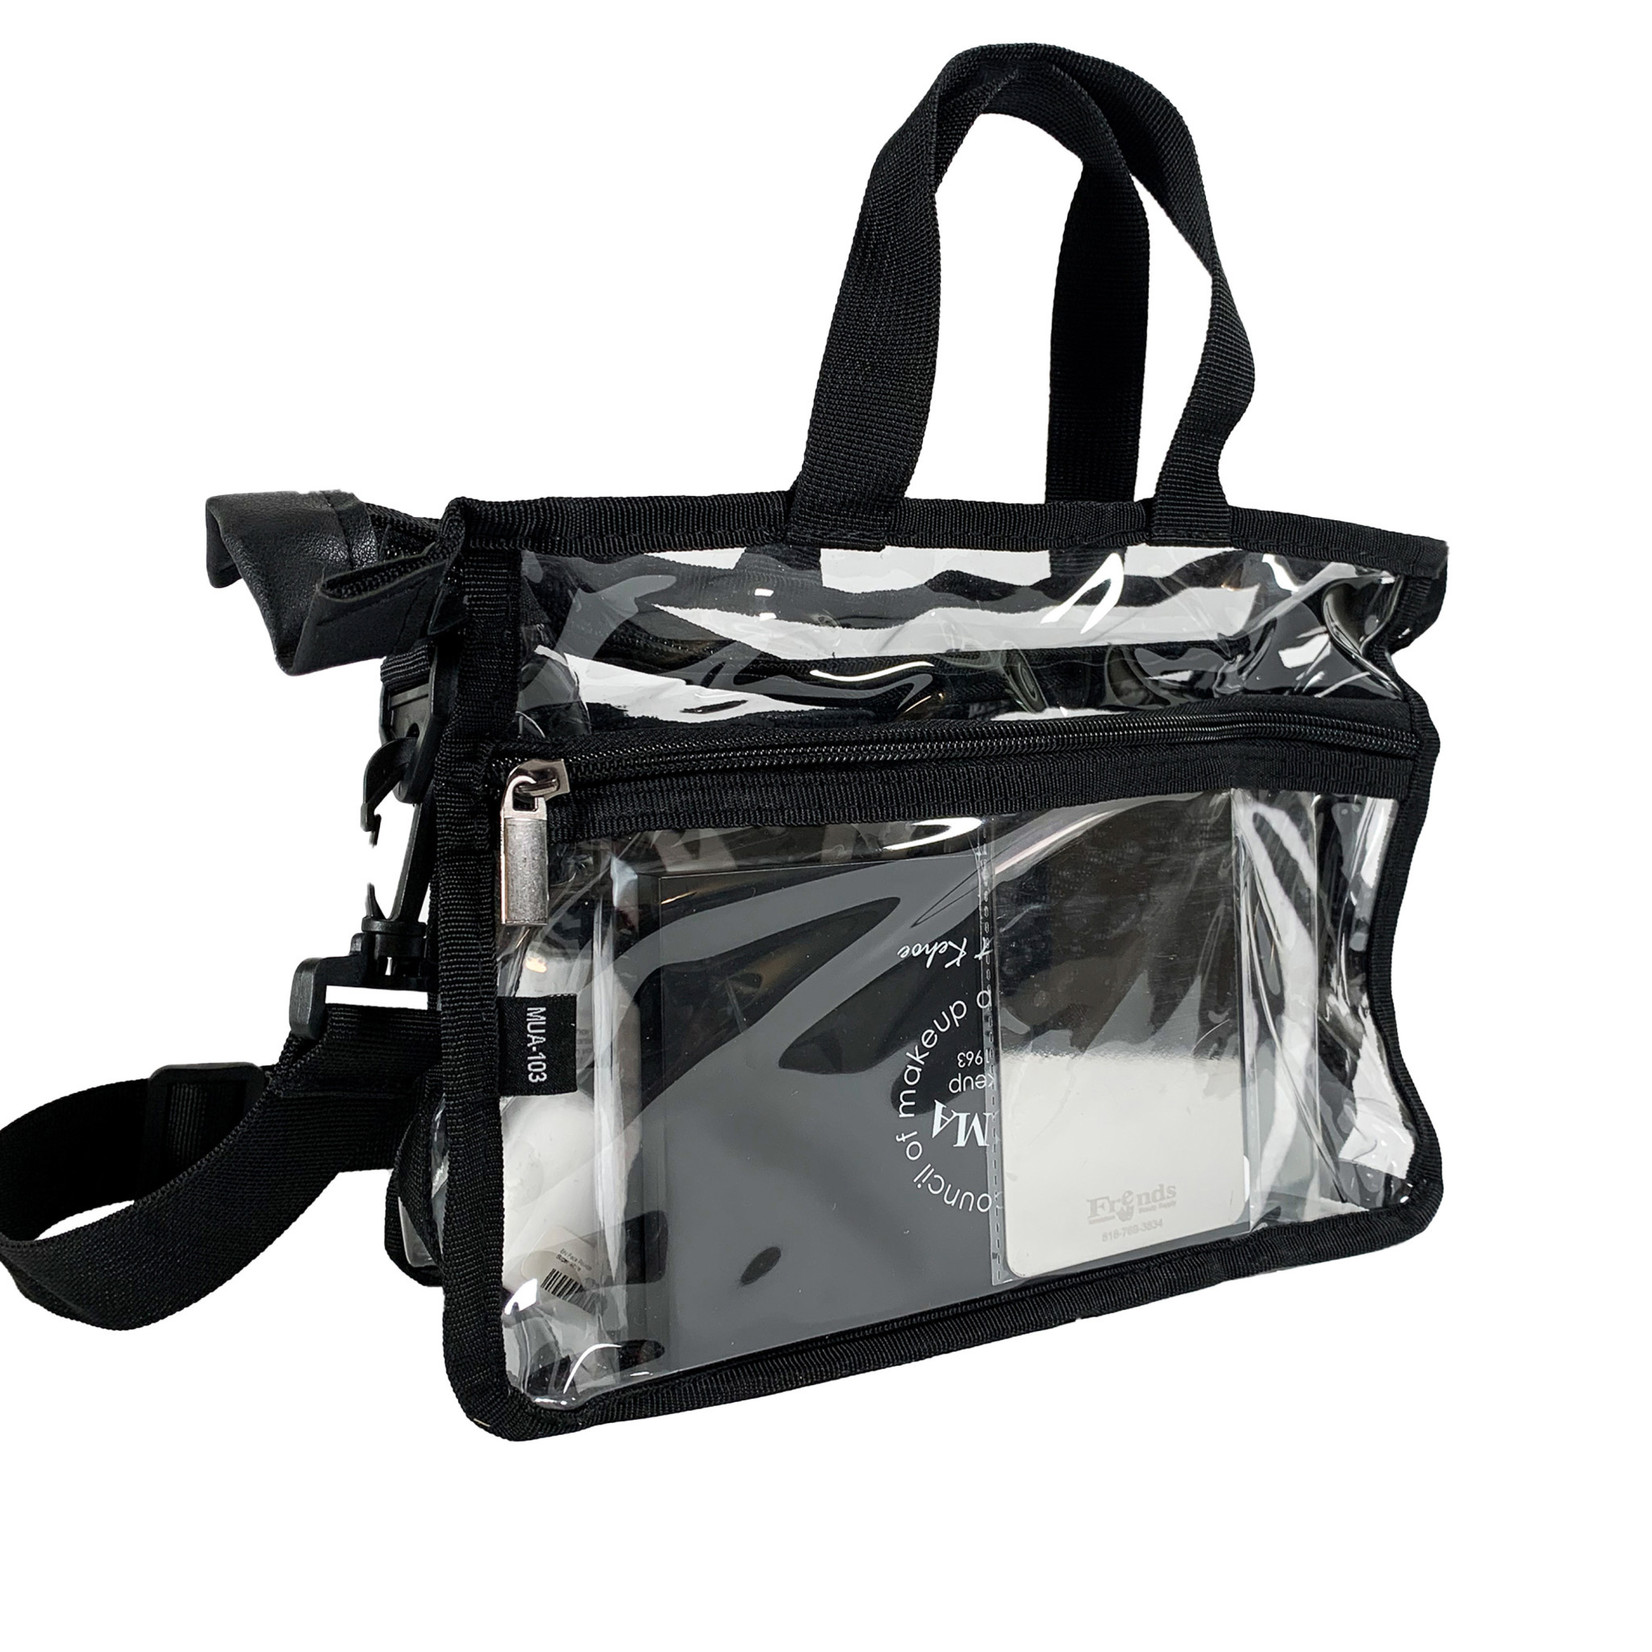 MUA Approved MUA-103 - Set Bag